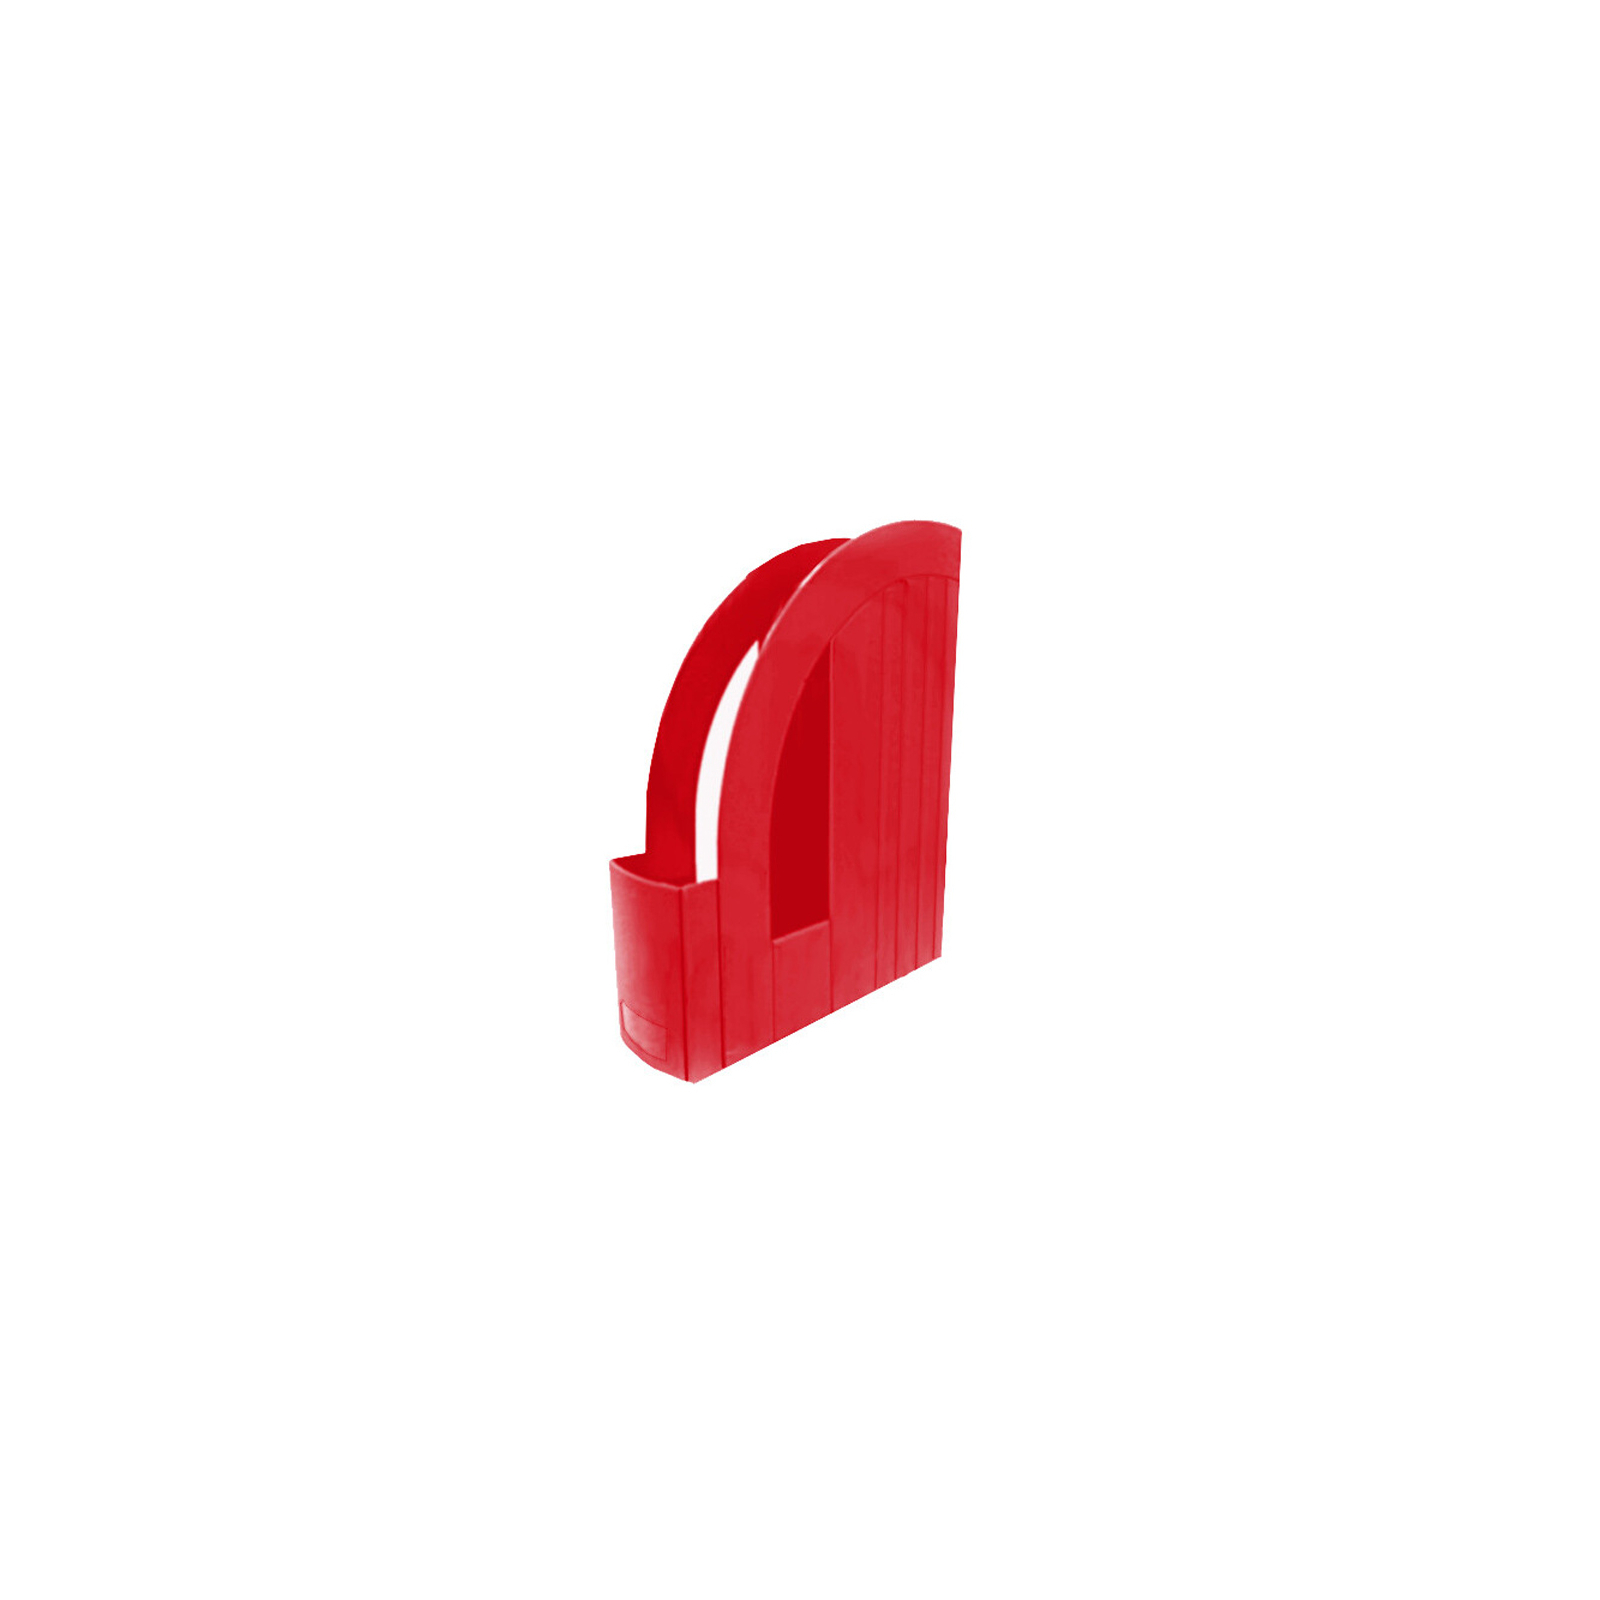 Лоток для паперів Арника вертикальний, пластиковий, червоний (80522)